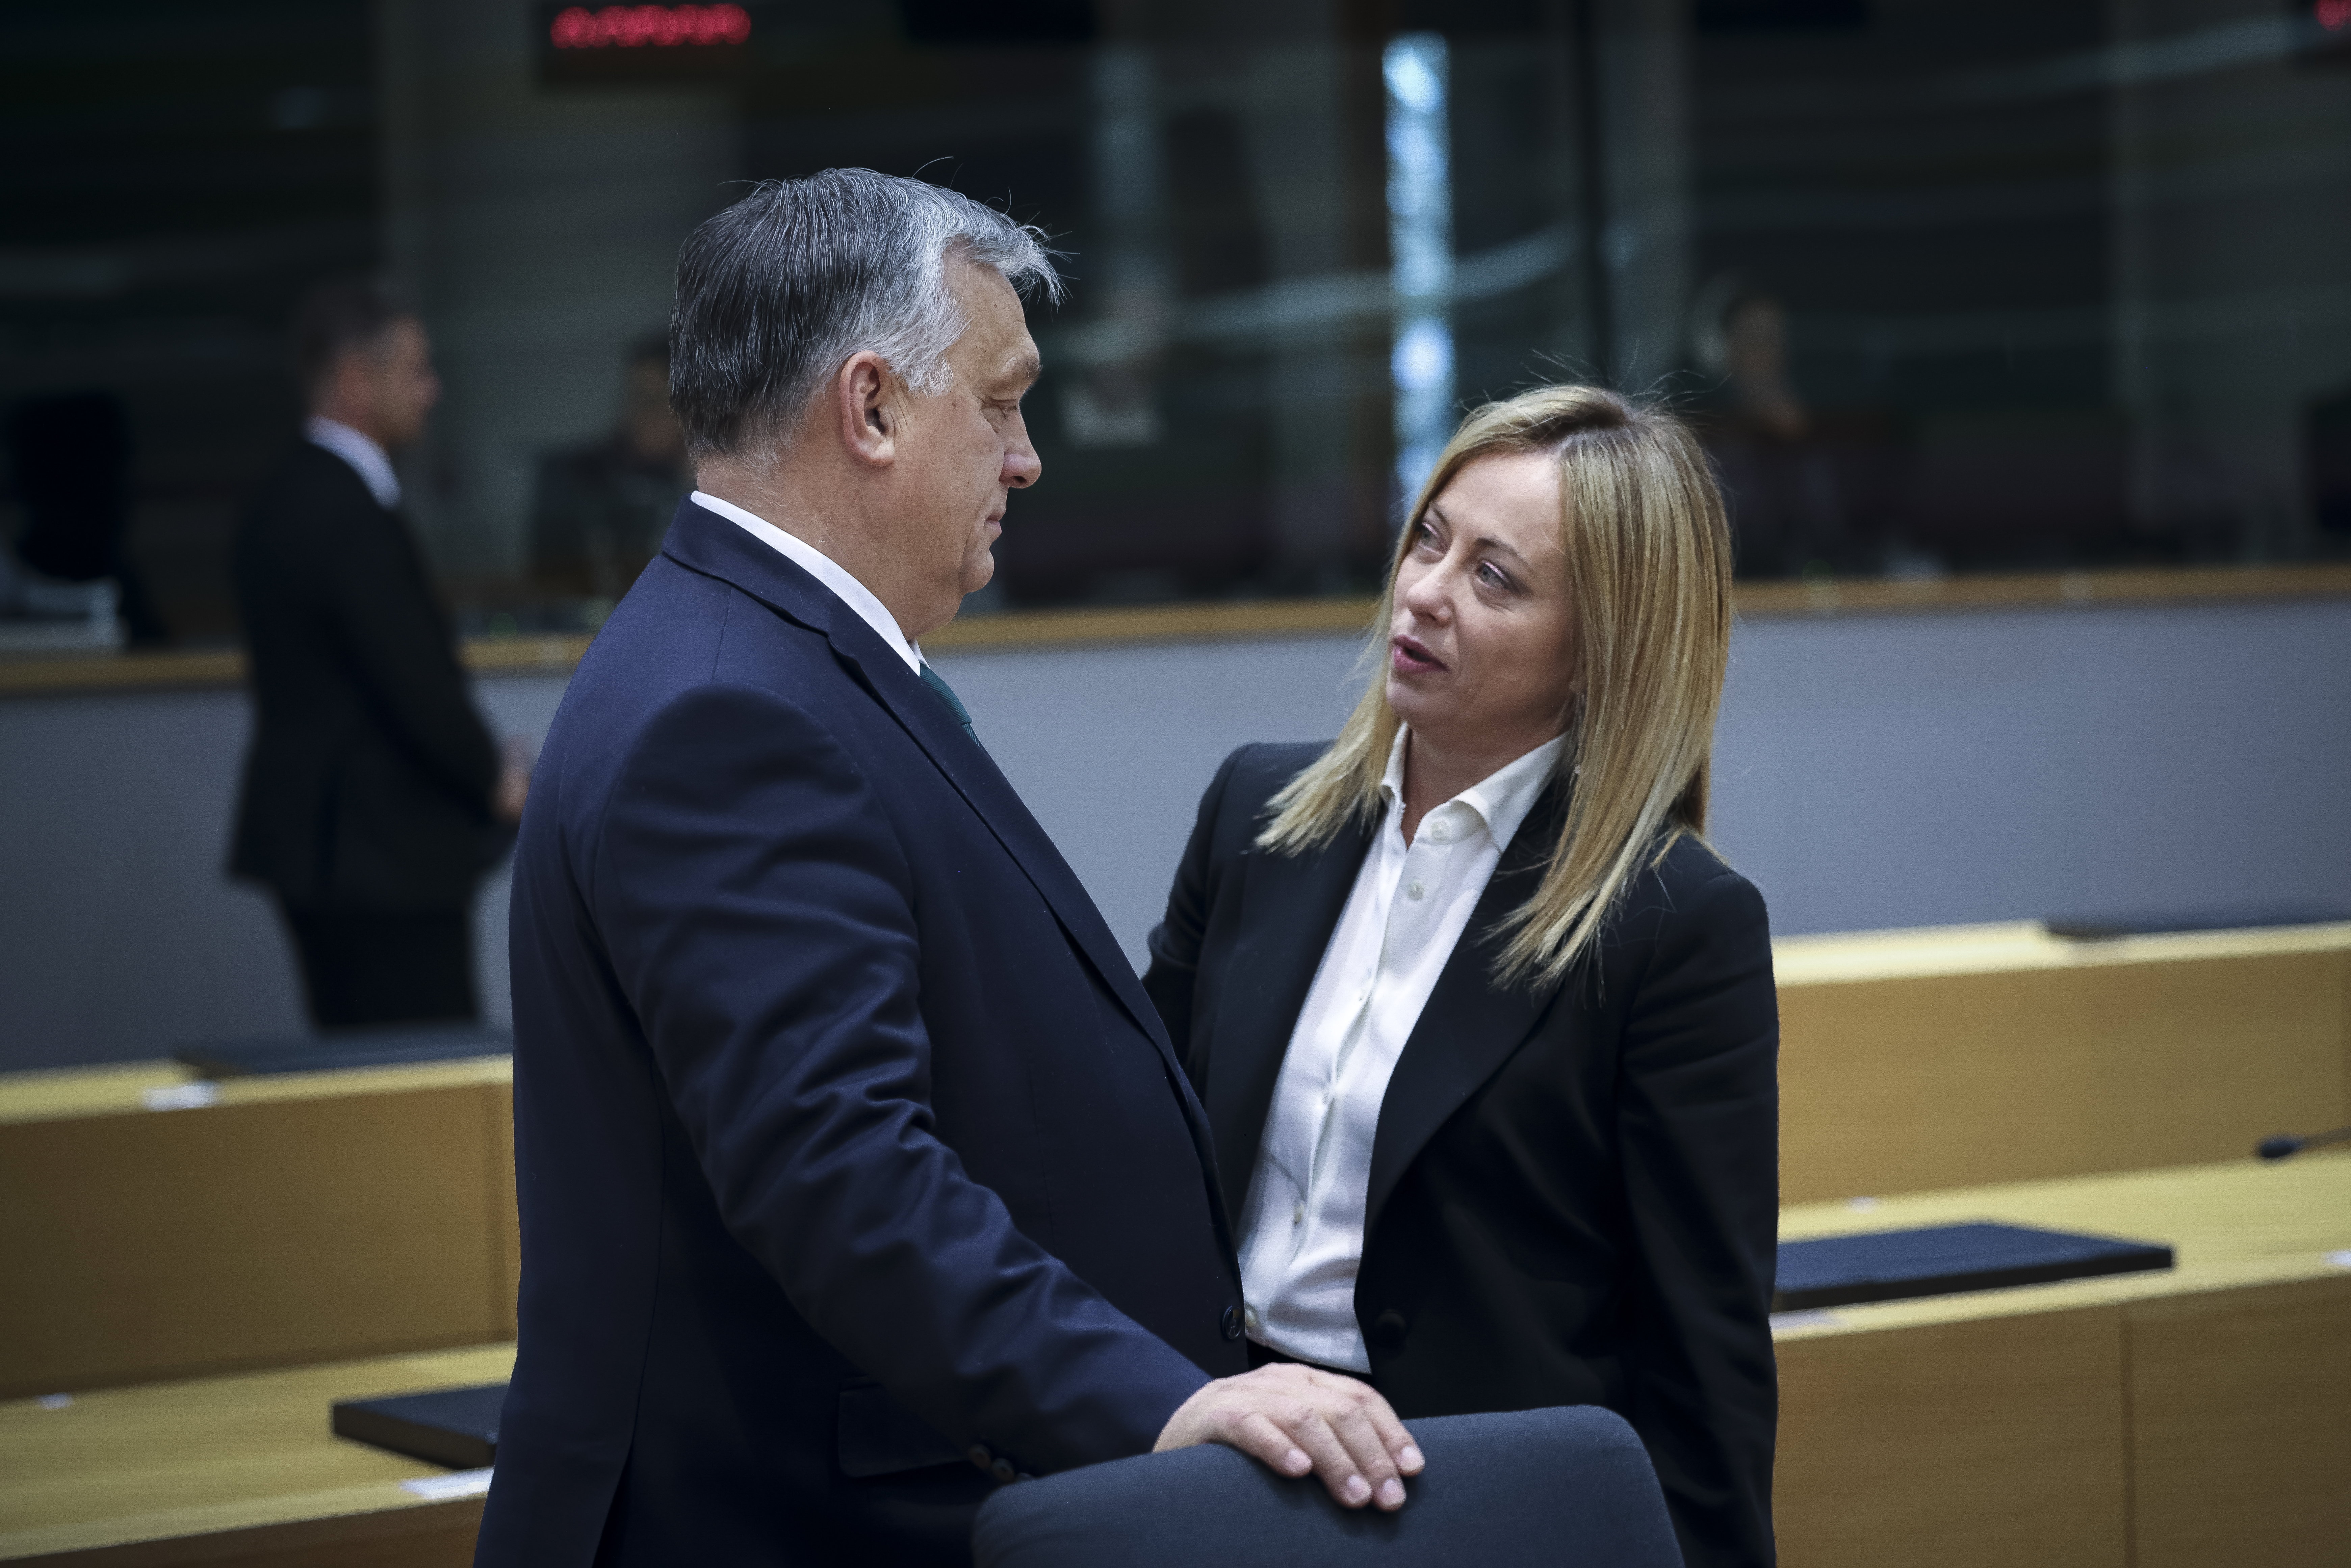 Orbán hű szövetséges inkább az EU-hoz hű, mint a kormány által bálványozott Pekinghez